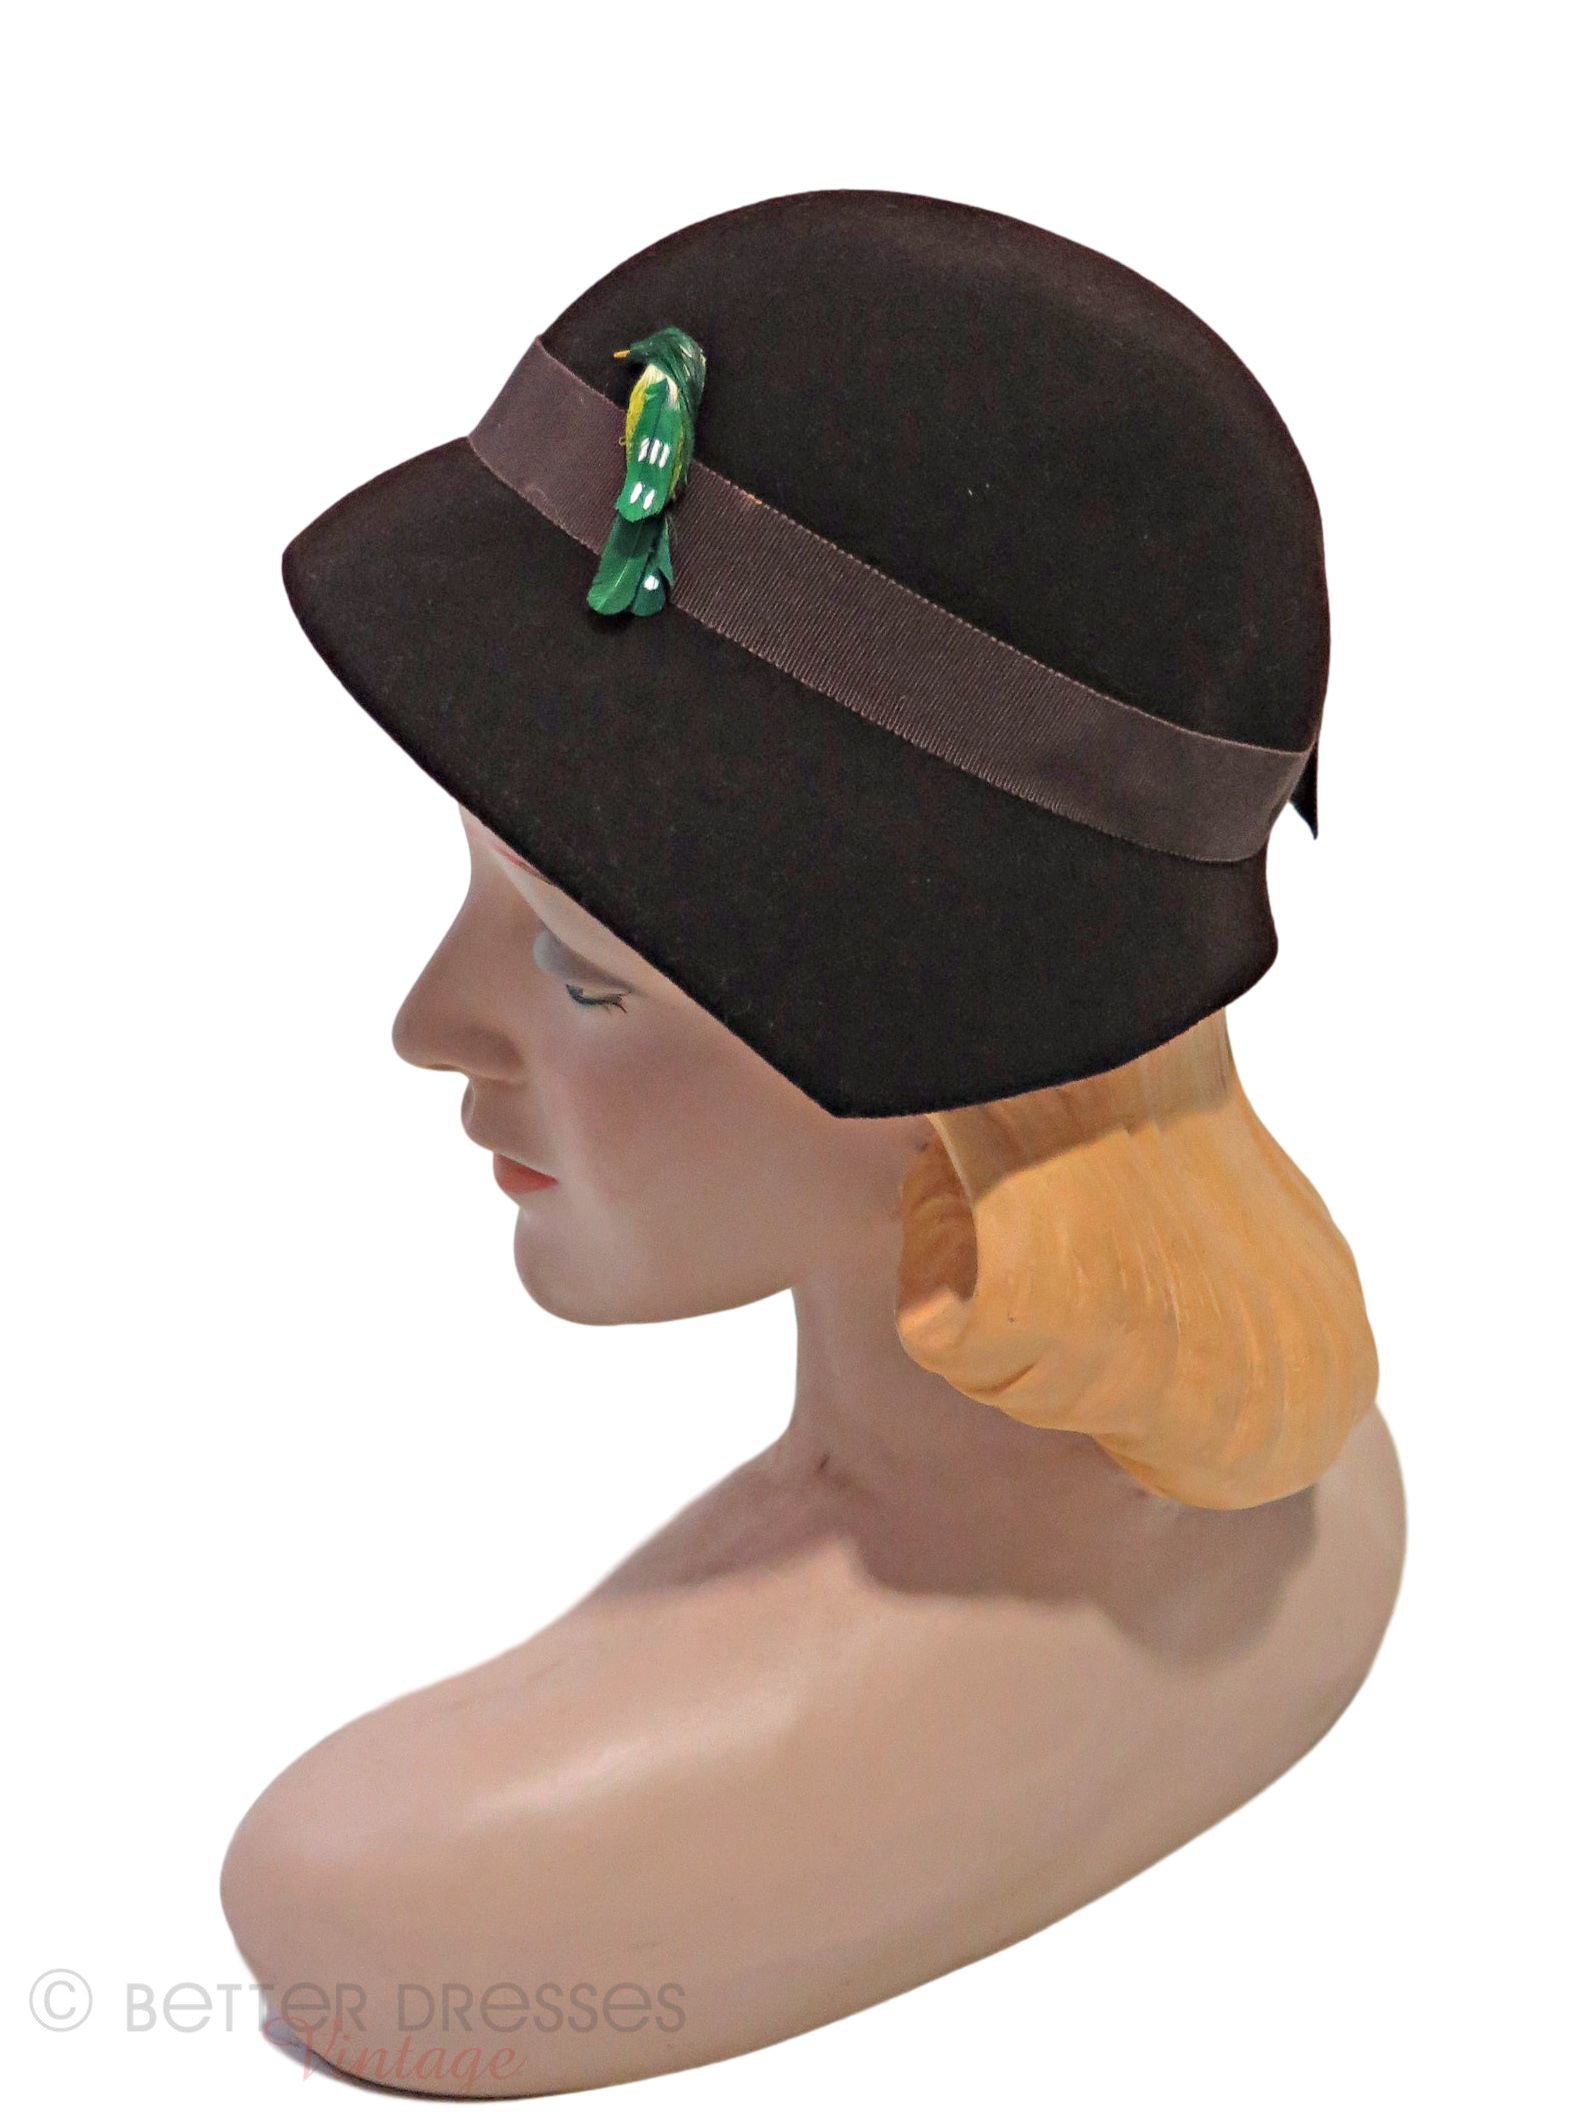 Chapeaux des années 20 : Le chapeau cloche